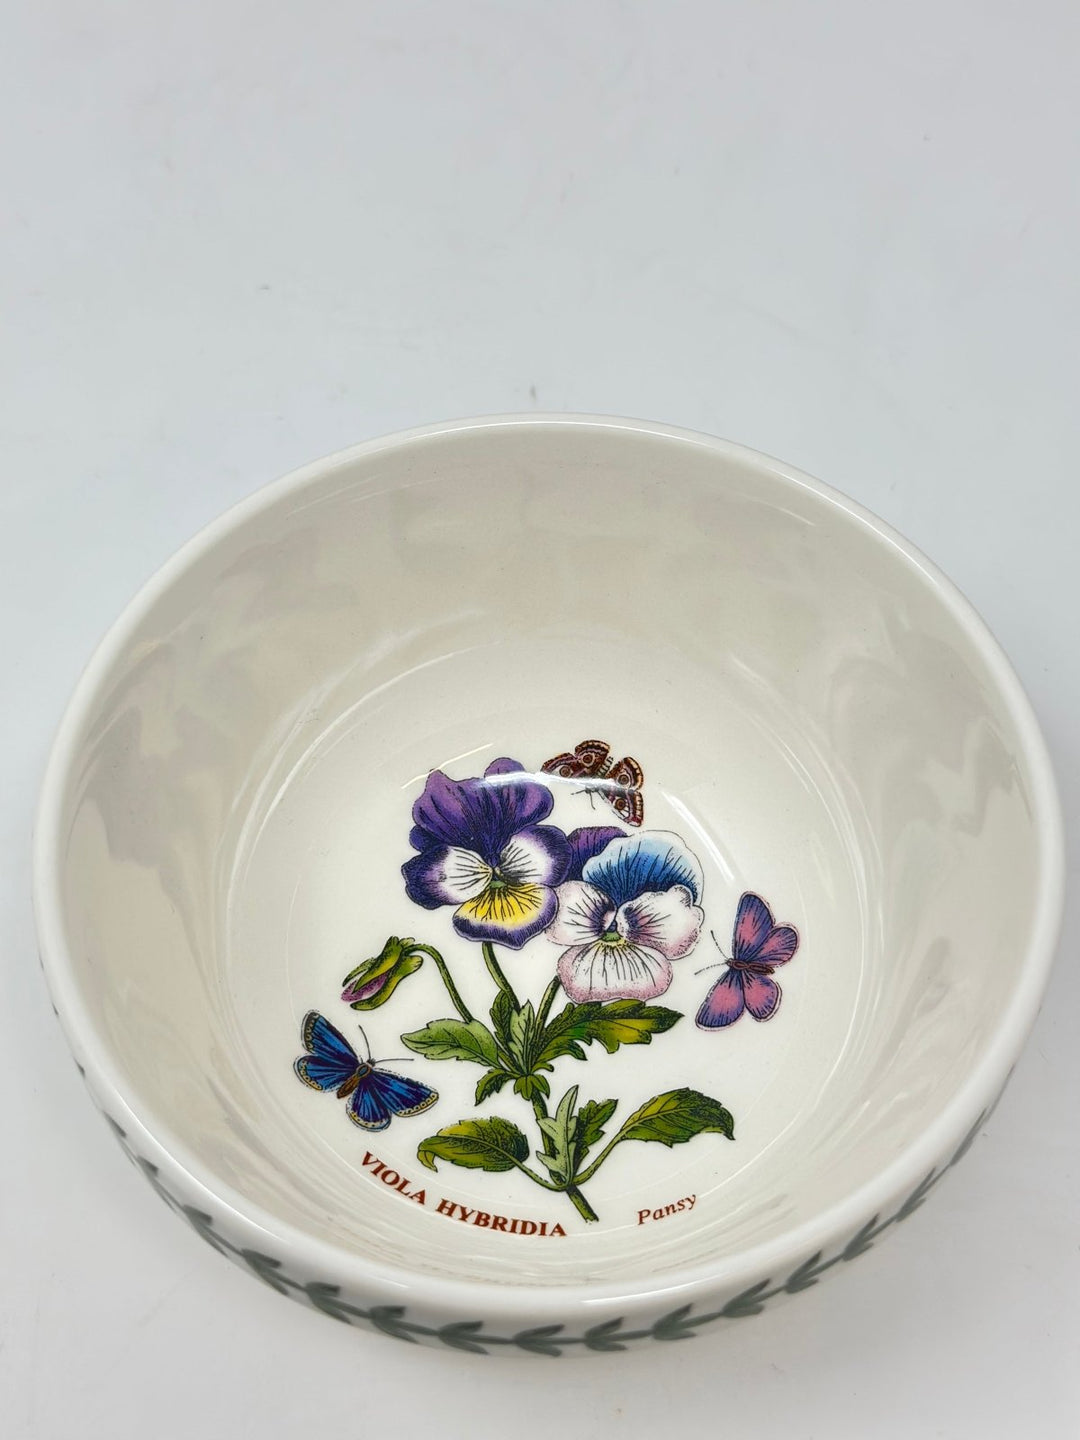 Portmeirion Botanic Garden Viola Hybridia Stacking Bowl - Kitchen Smart